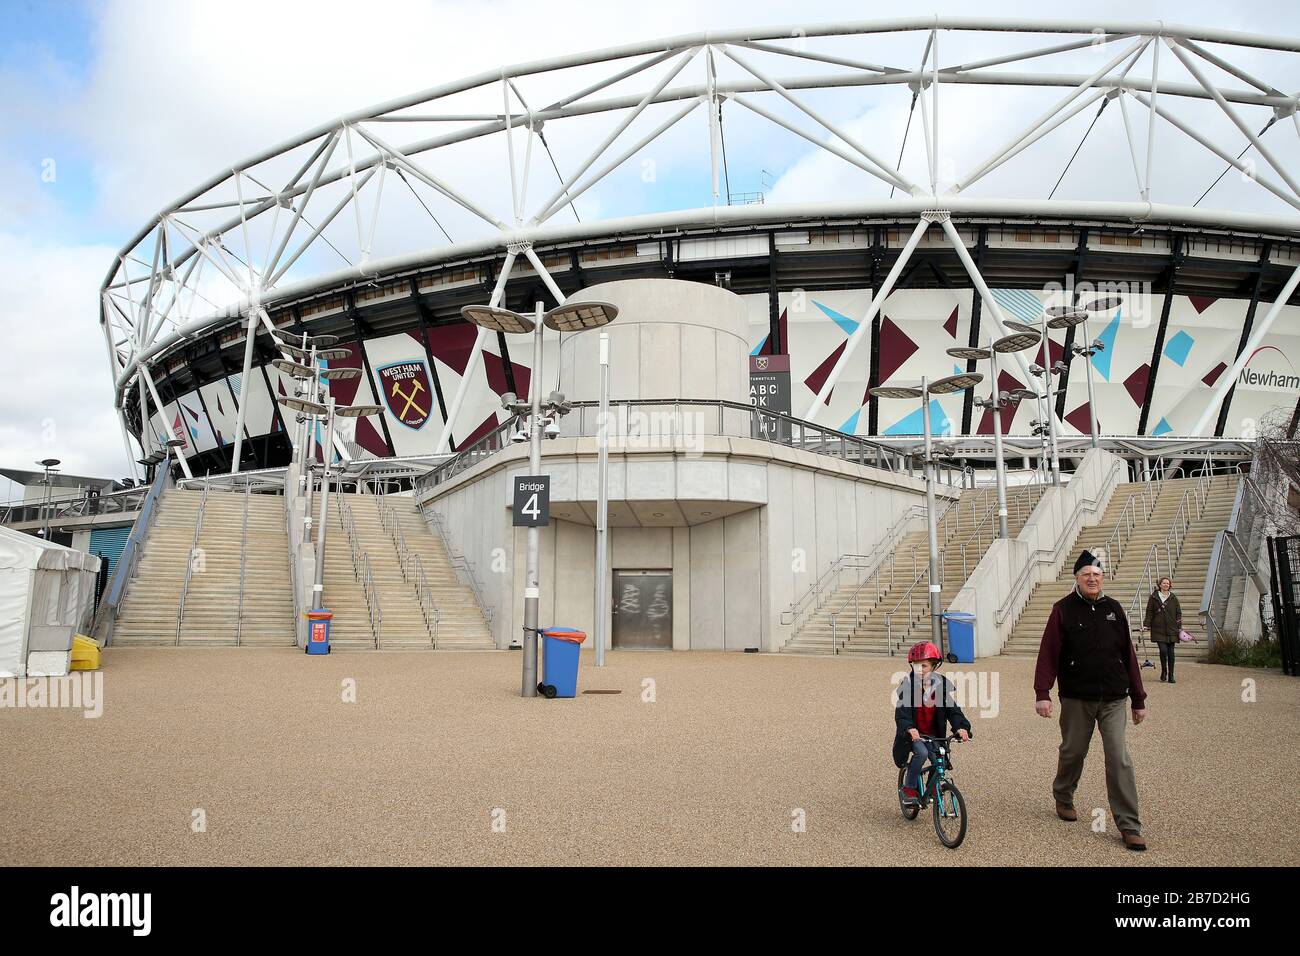 Vue à l'extérieur du London Stadium, stade du West Ham United Football Club, suite à l'annonce de vendredi que la Premier League a suspendu tous les matches jusqu'au samedi 4 avril 2020. Banque D'Images